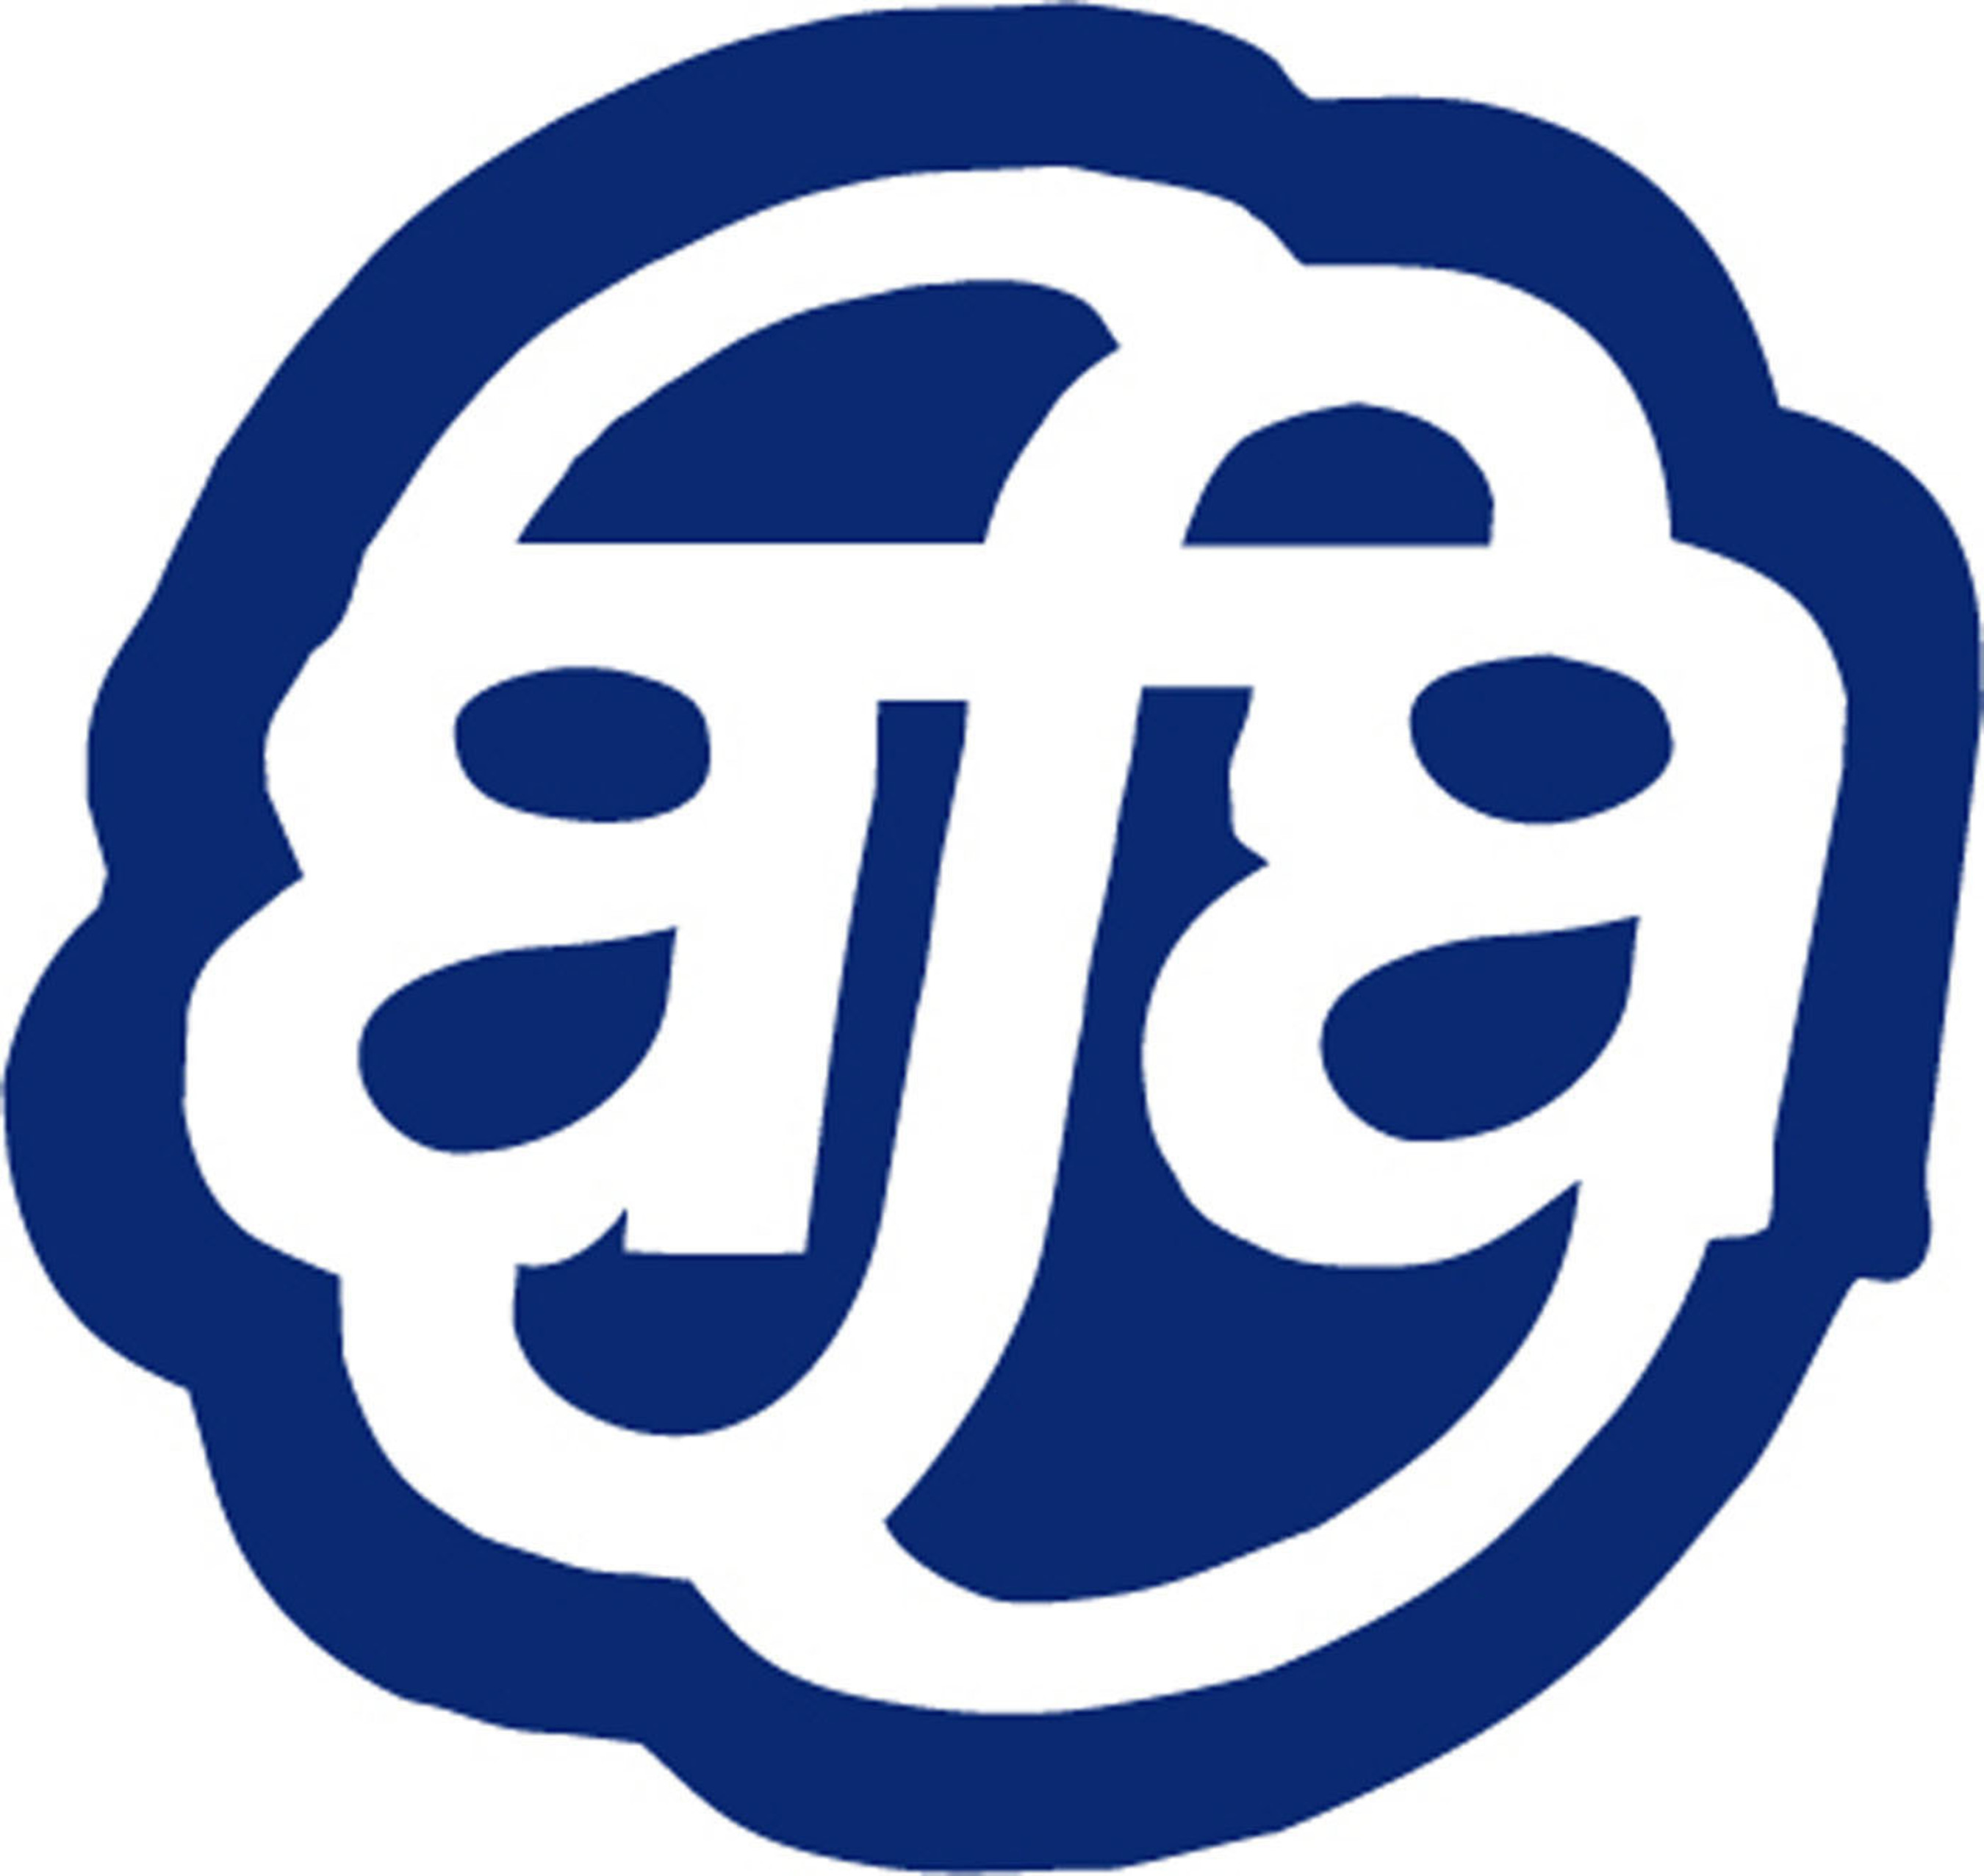 Association of Flight Attendants Logo.